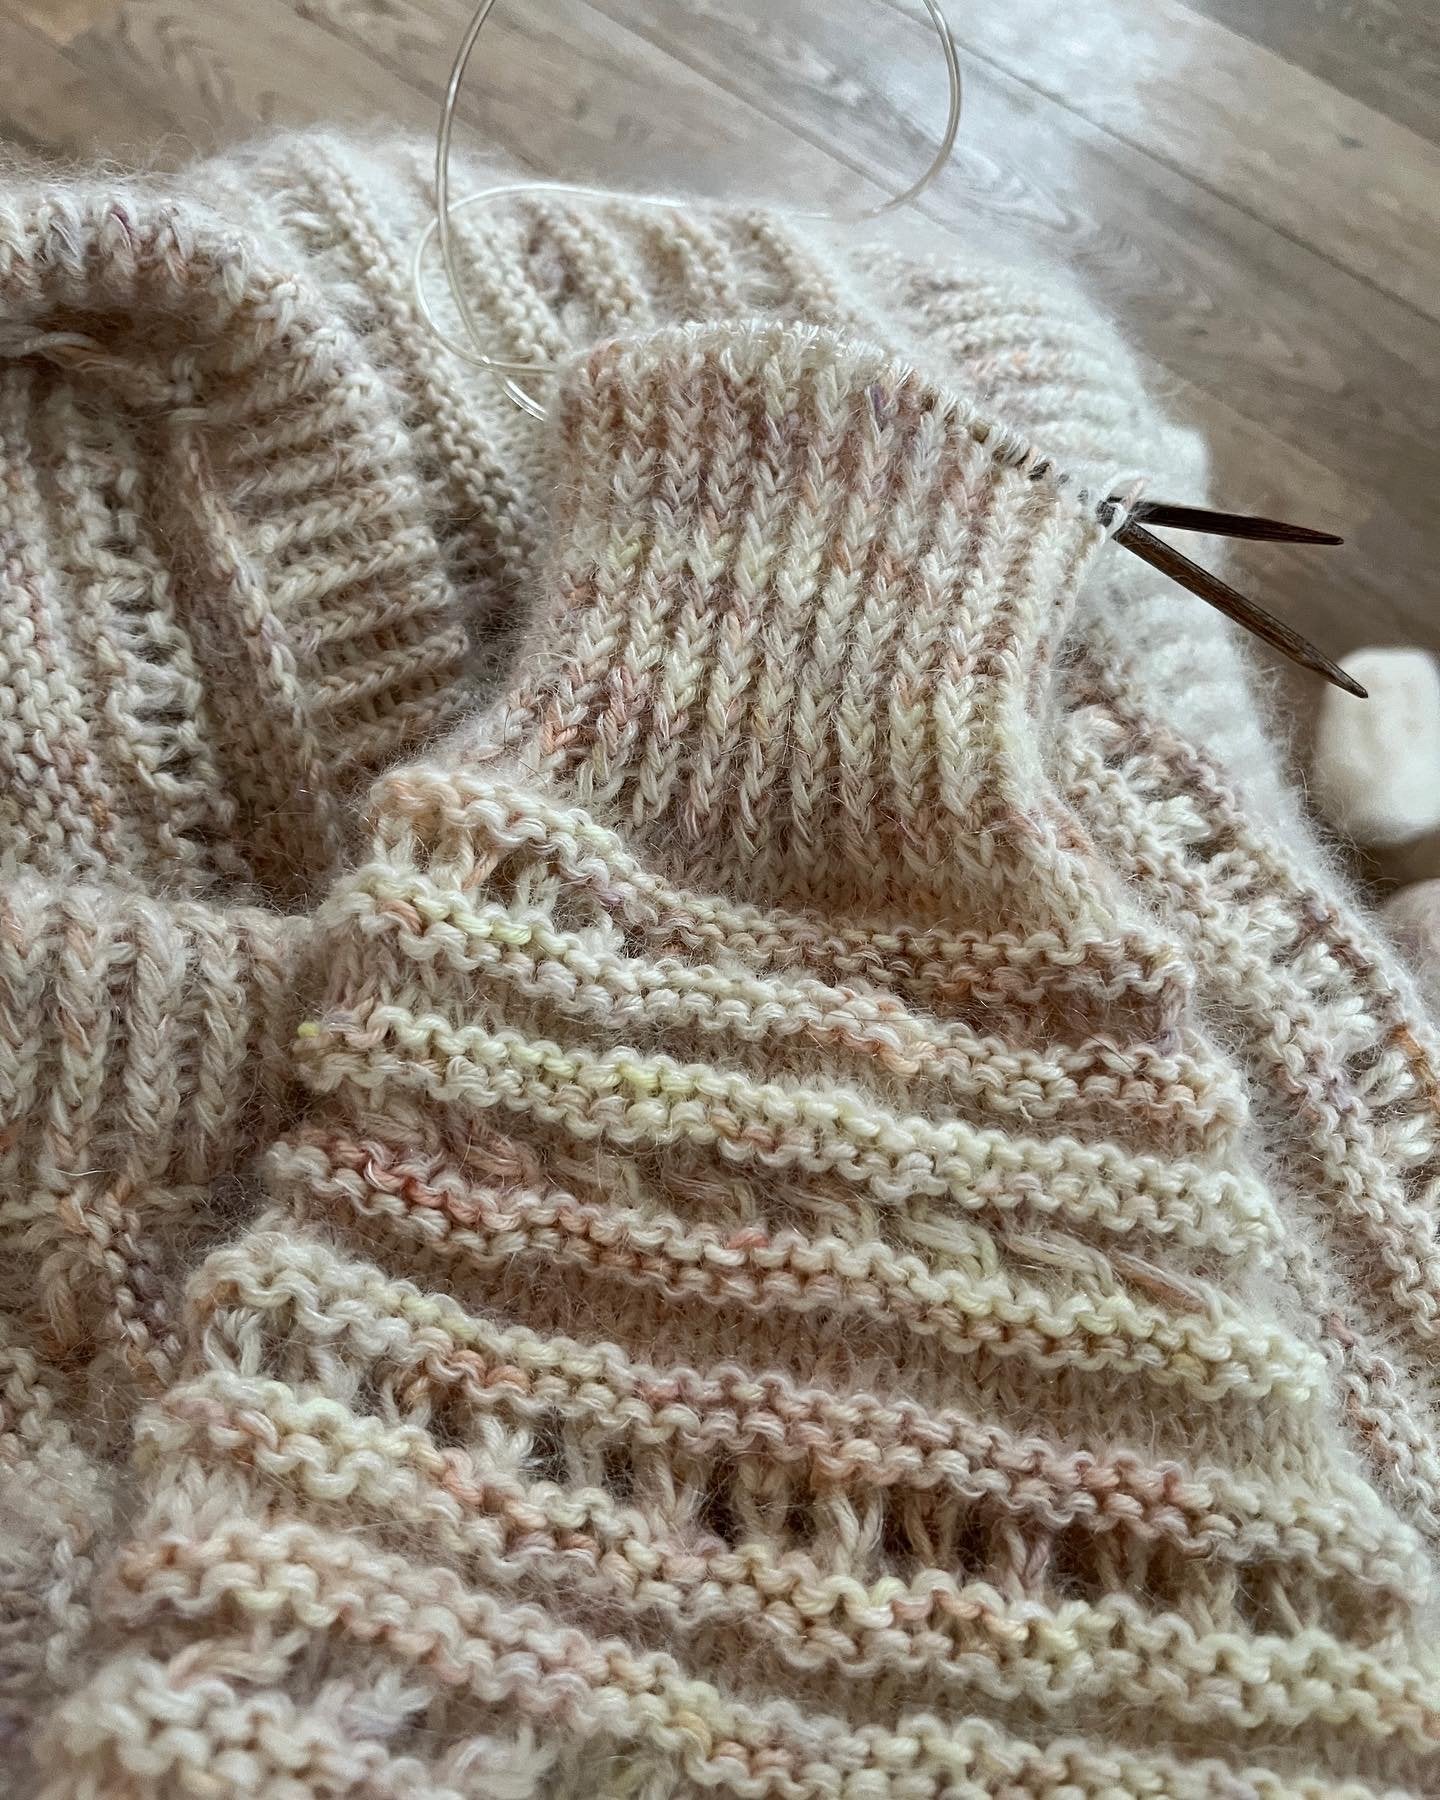 Cherish Sweater English Popknit knitting pattern